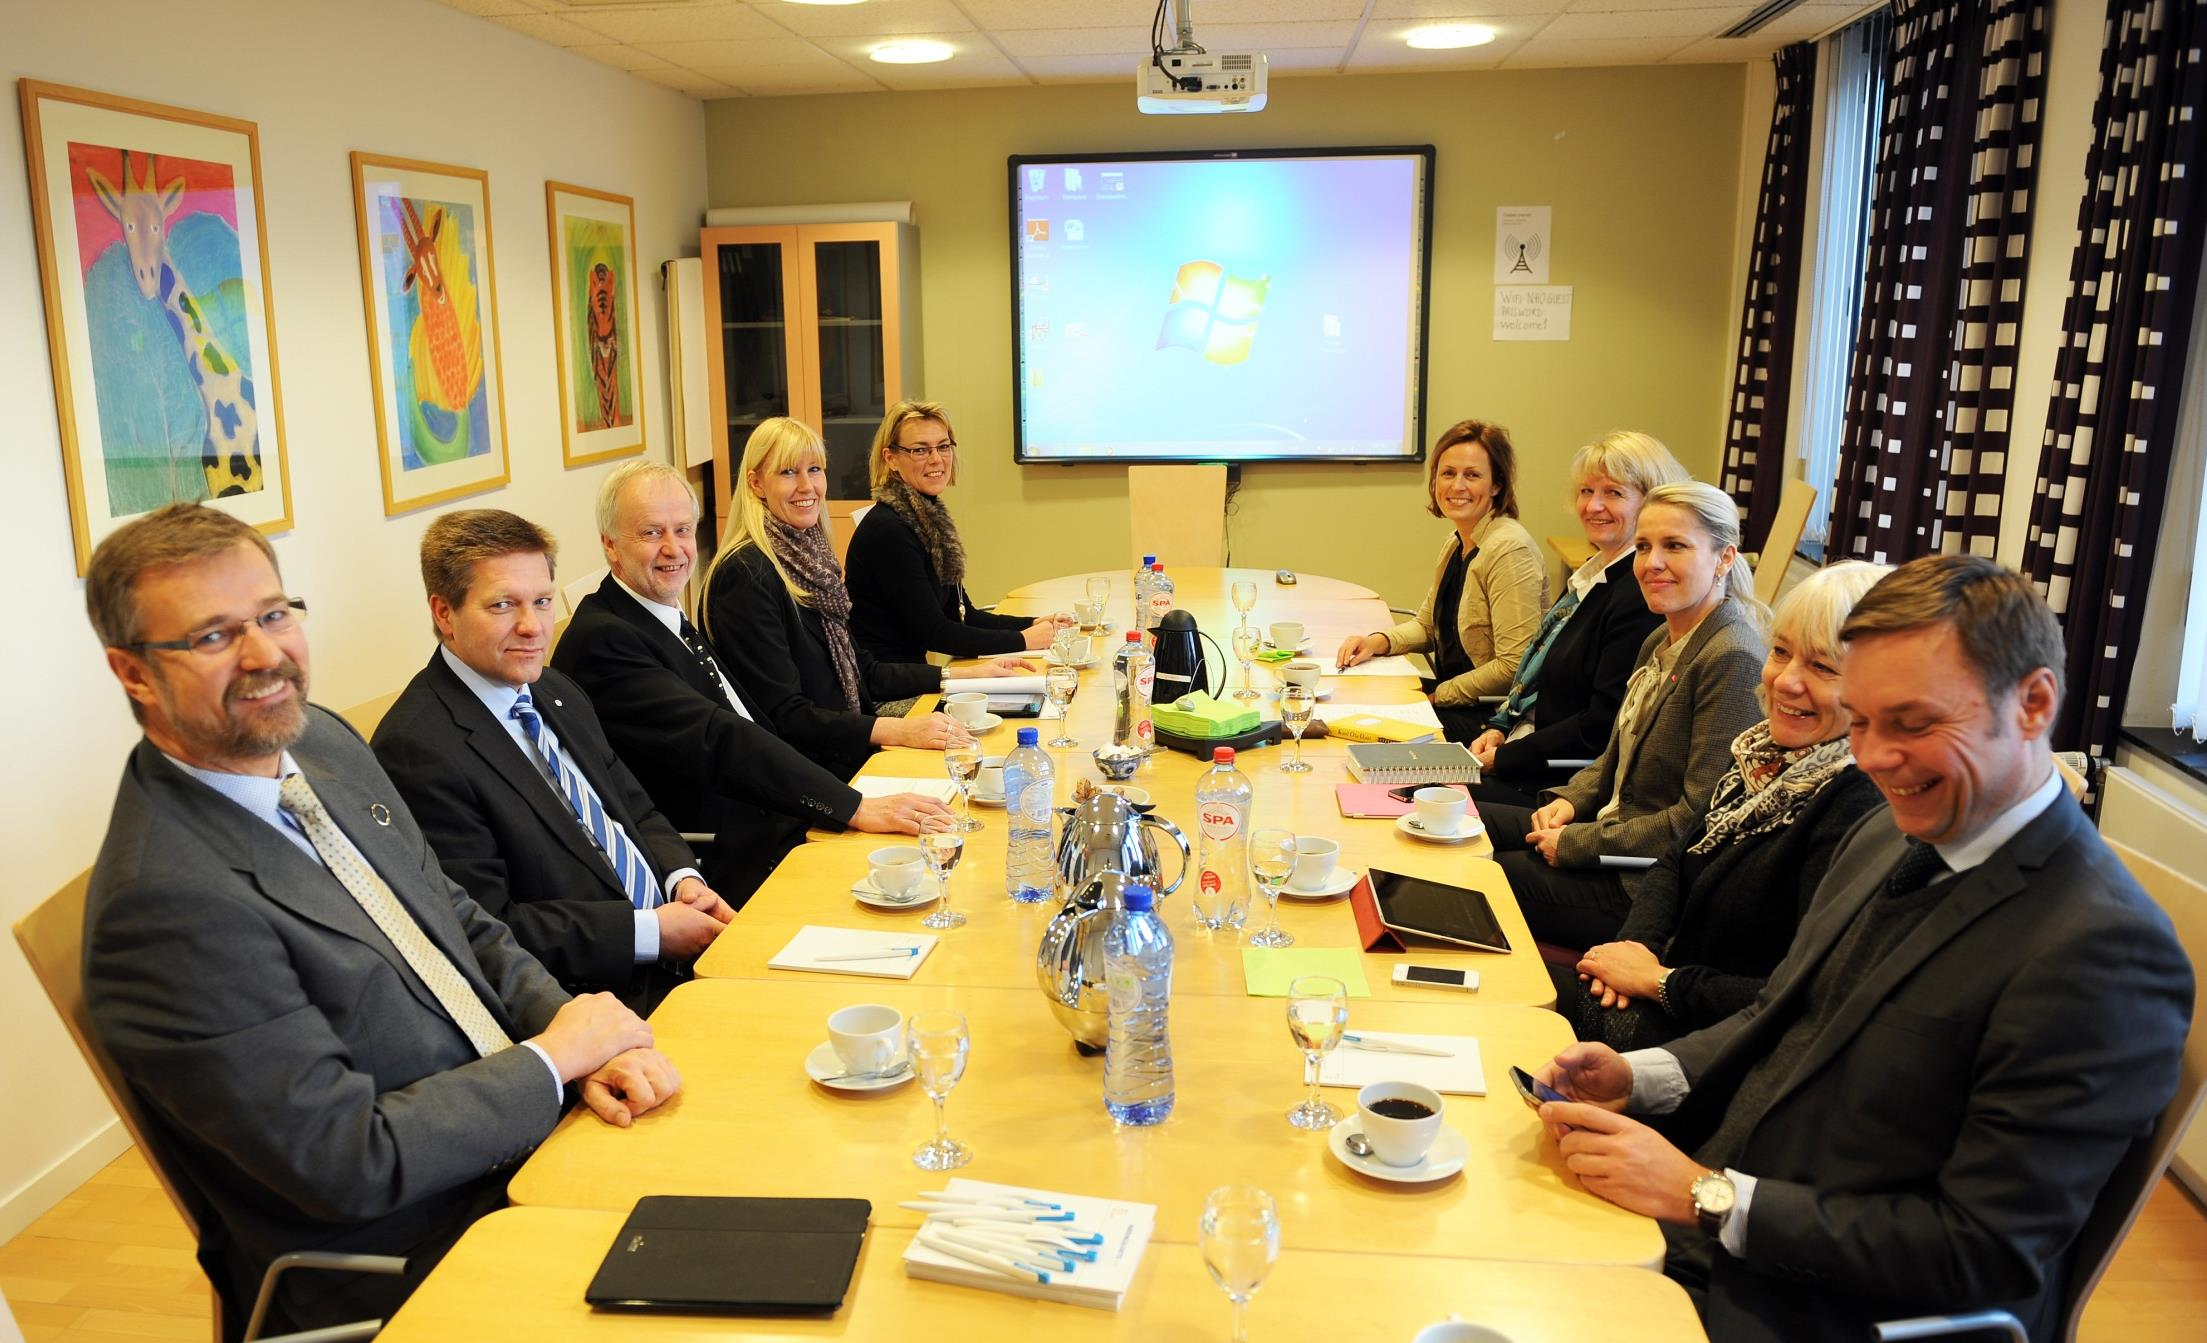 Fra venstre: Jon Grimsgaard (NHO-rådgiver), Pål Wang (Nokas AS), Terje Christensen (Bobygg AS), Kristin Saga (NHOs regiondirektør), Ingebjørg Tollnes (Komplett ASA), Torill Gogstad (Fønix AS), Marit